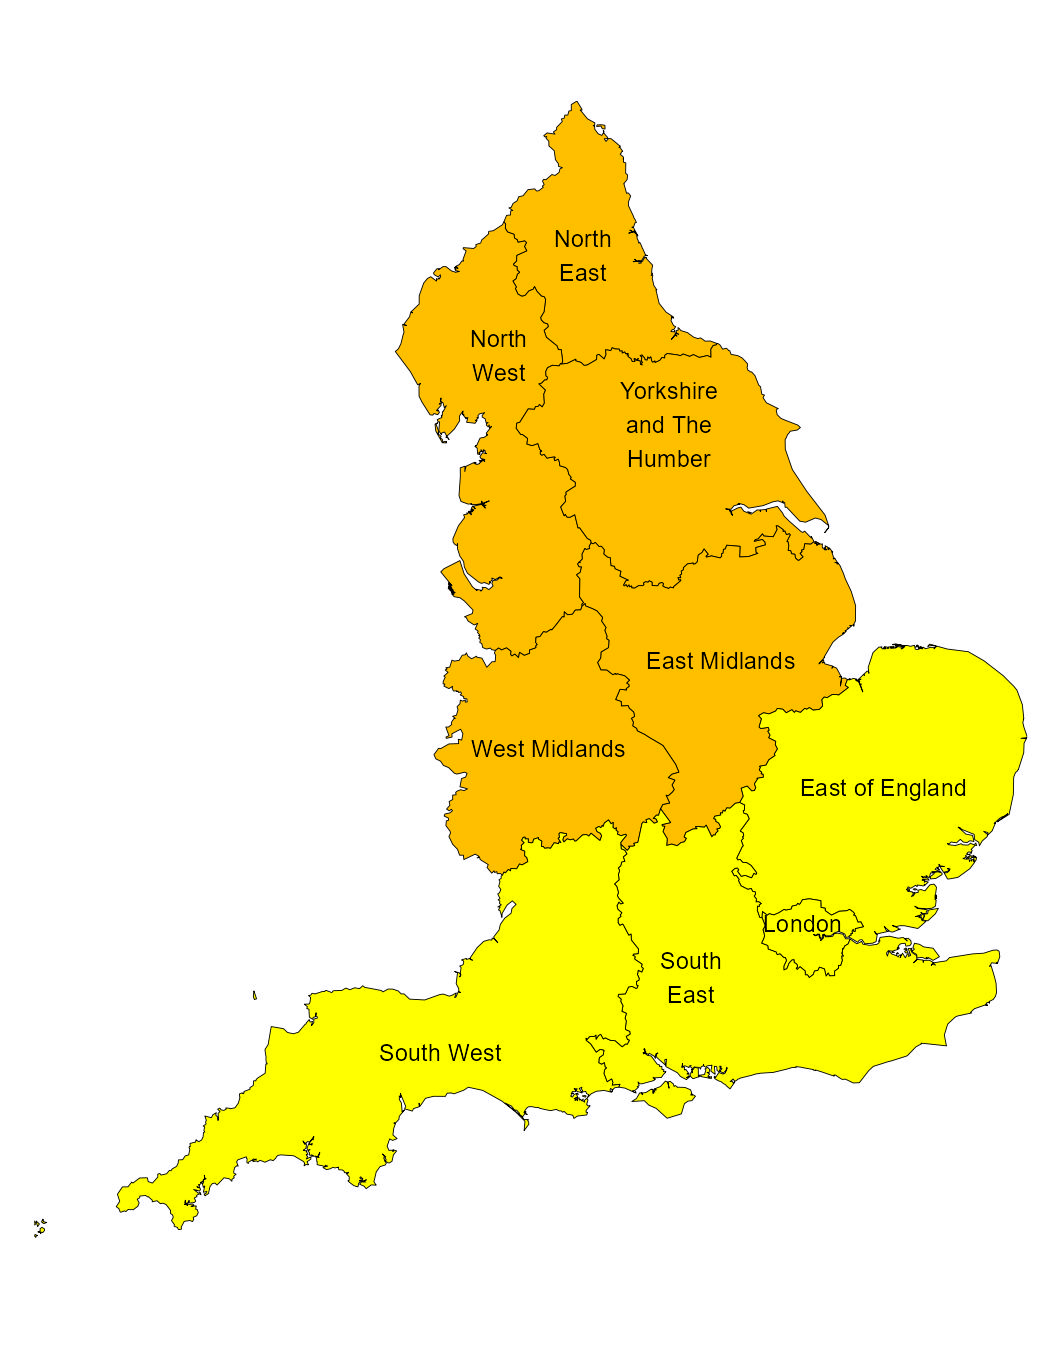 Für Teile Englands wurden bernsteinfarbene und gelbe Erkältungswarnungen herausgegeben